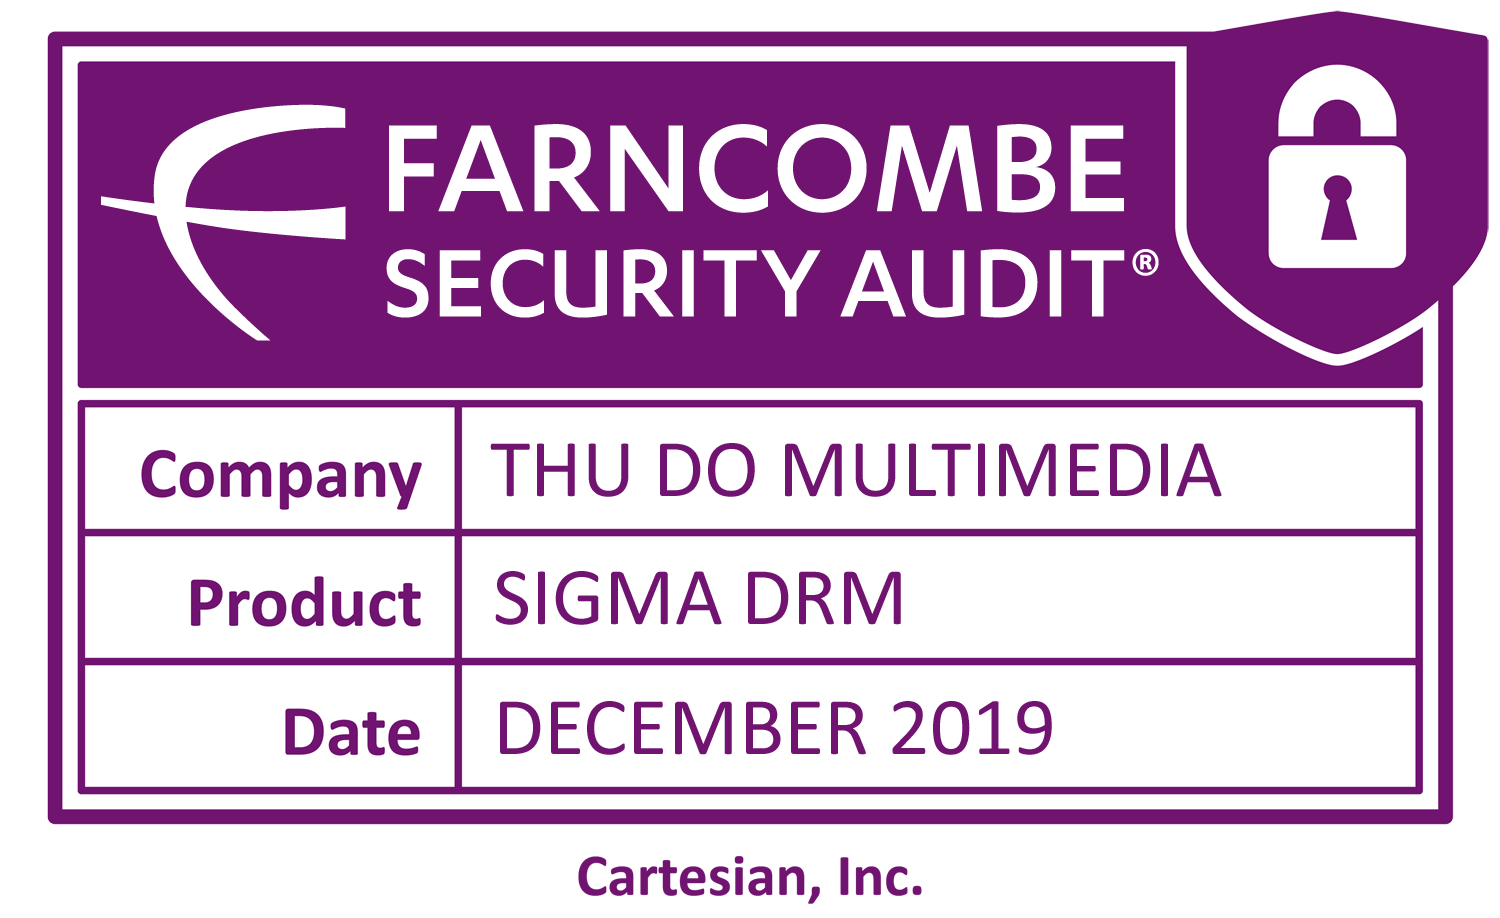 Thủ Đô Multimedia công bố Hoàn tất kiểm định bảo mật Farncombe của Cartesian cho Giải pháp bảo vệ bản quyền nội dung Sigma DRM